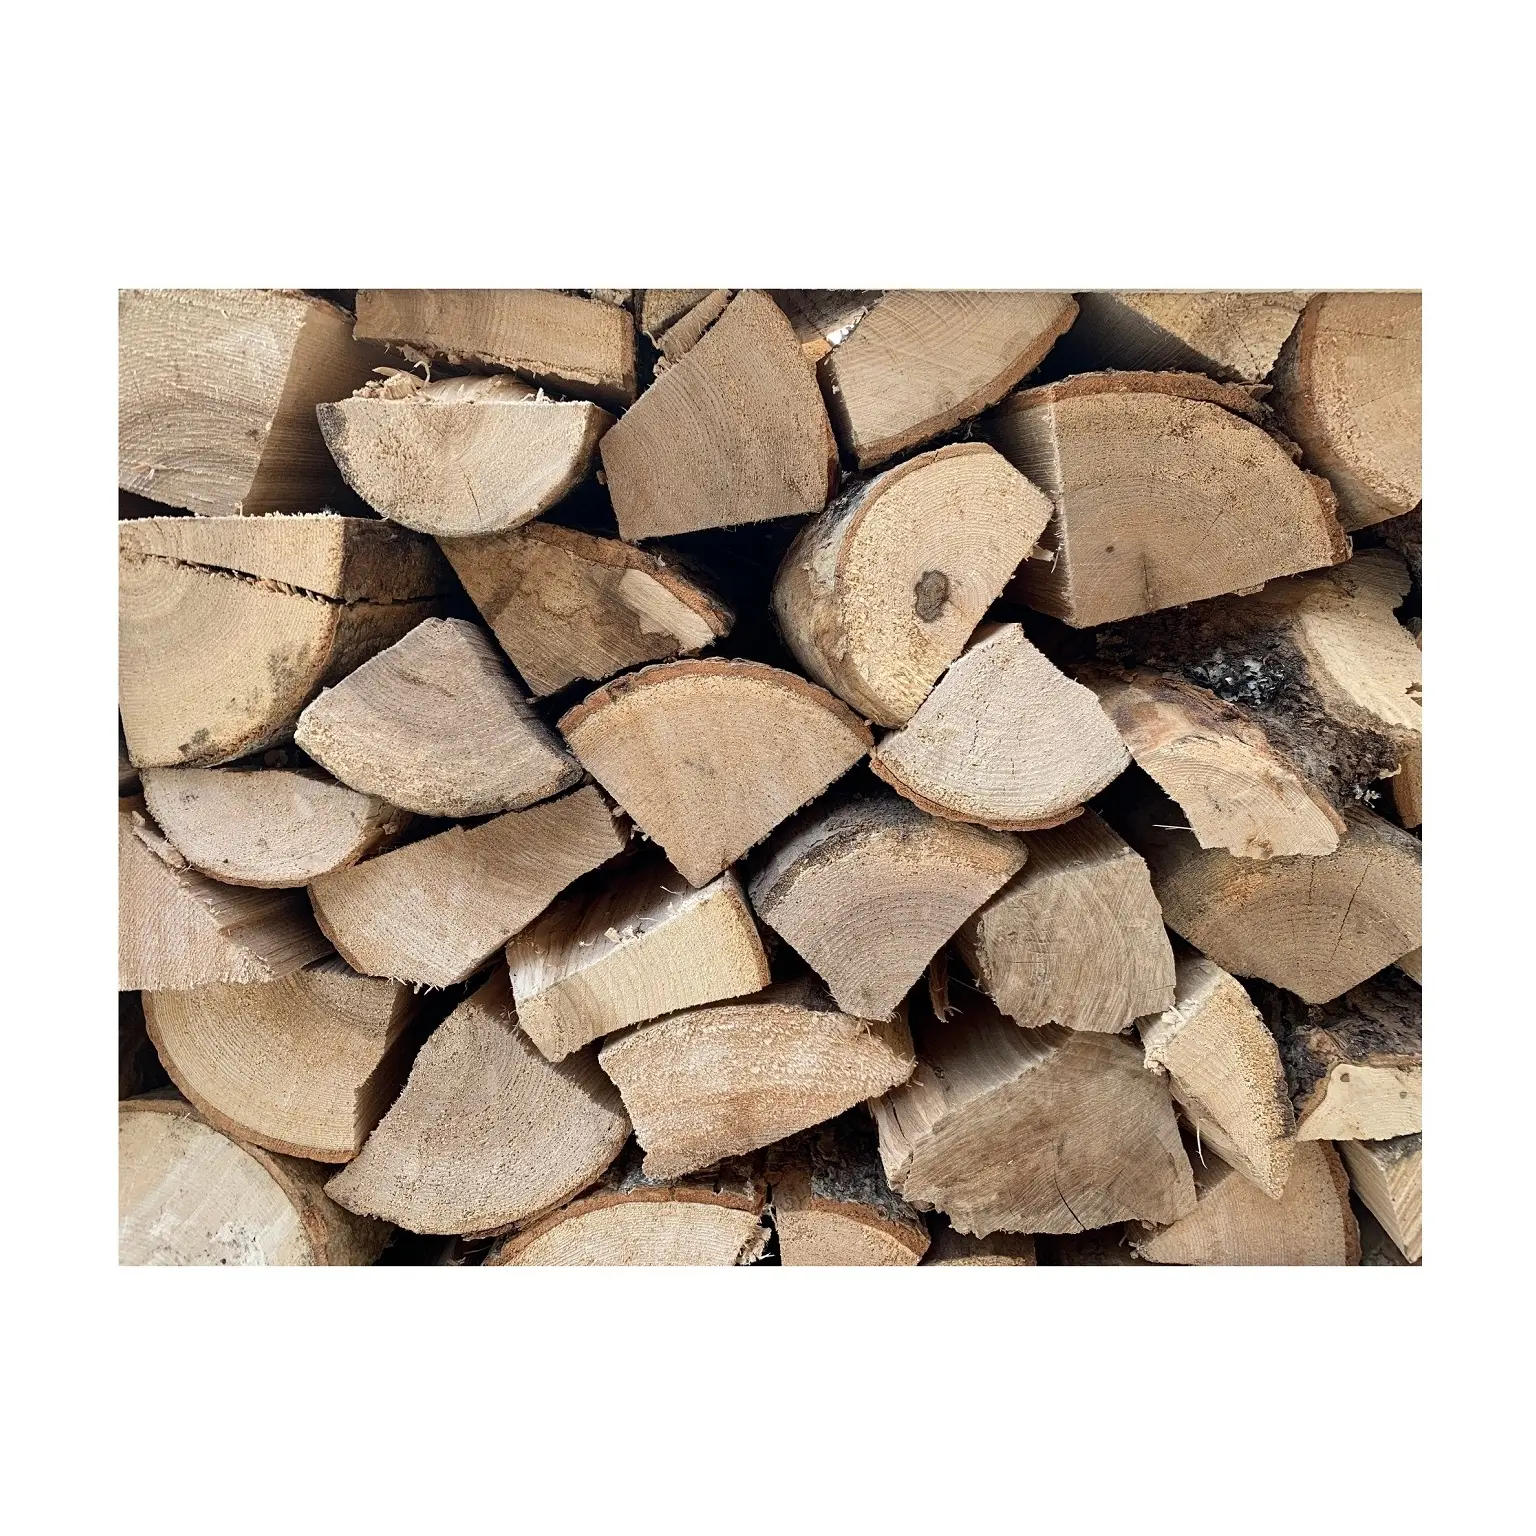 Harga grosir dijual Stock besar tersedia untuk kayu bakar kering kayu ek/Abu/Beech